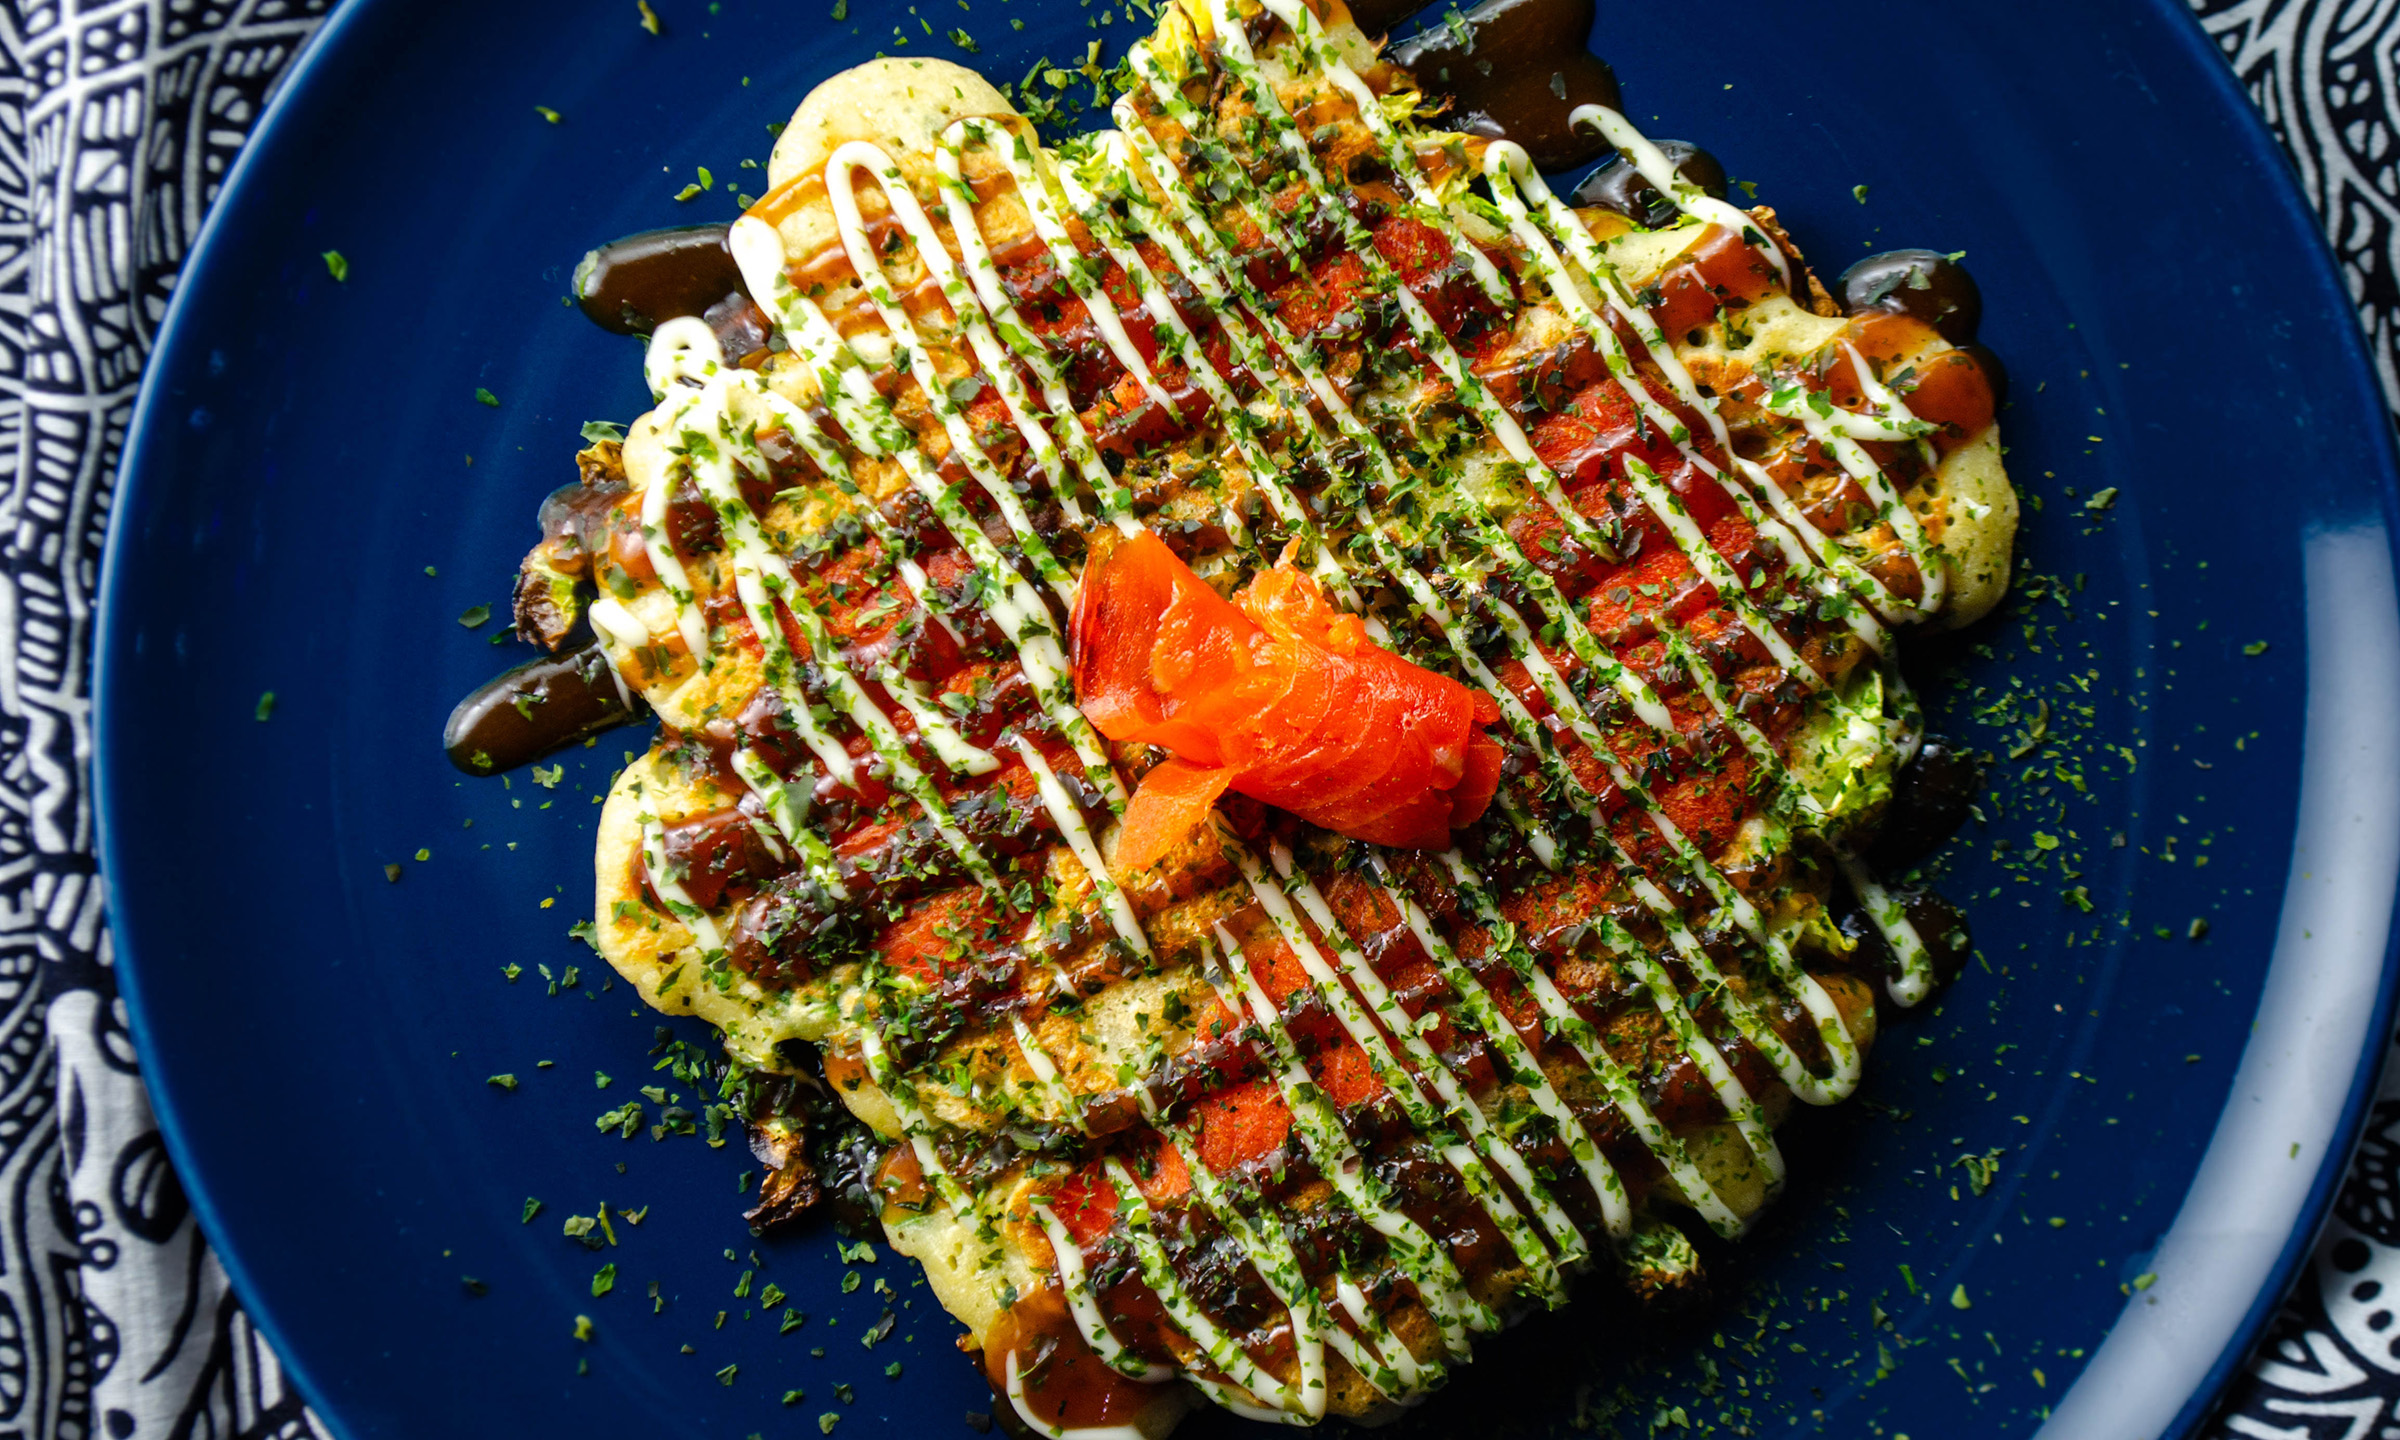 okonomiyaki Japanese pancake on a blue plate with smoked salmon